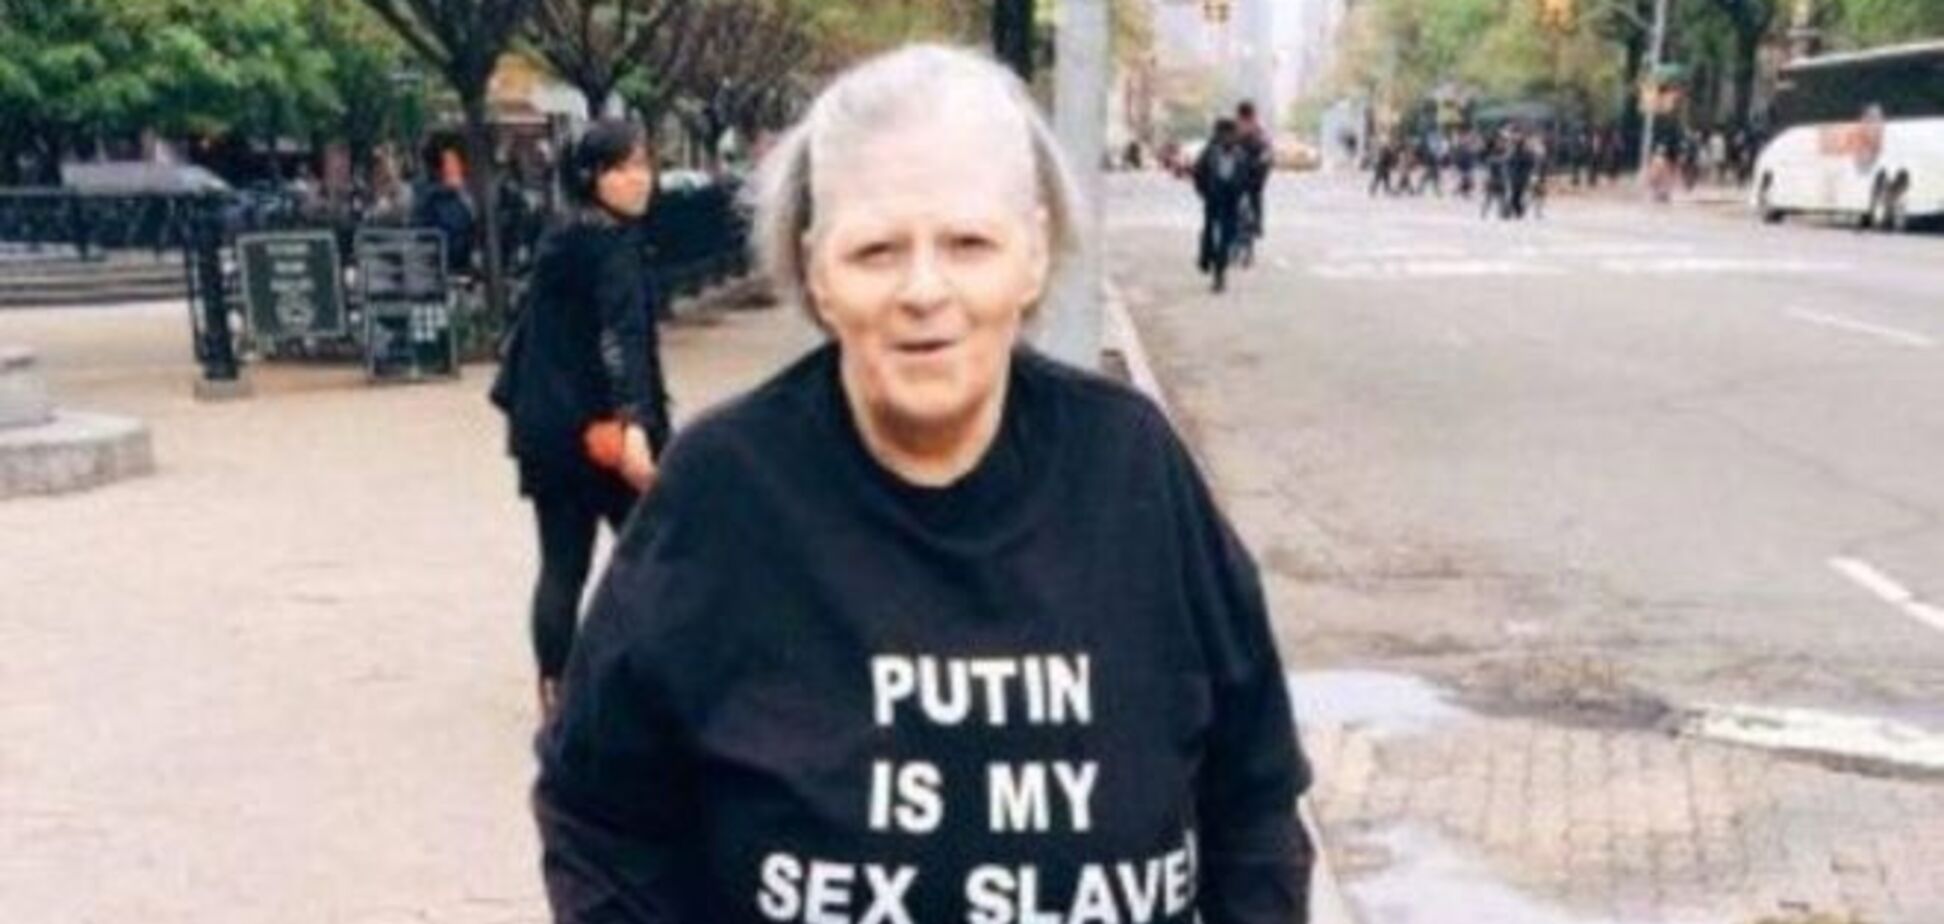 'Путин - мой секс-раб' и другие пикантные надписи на одежде пожилых людей